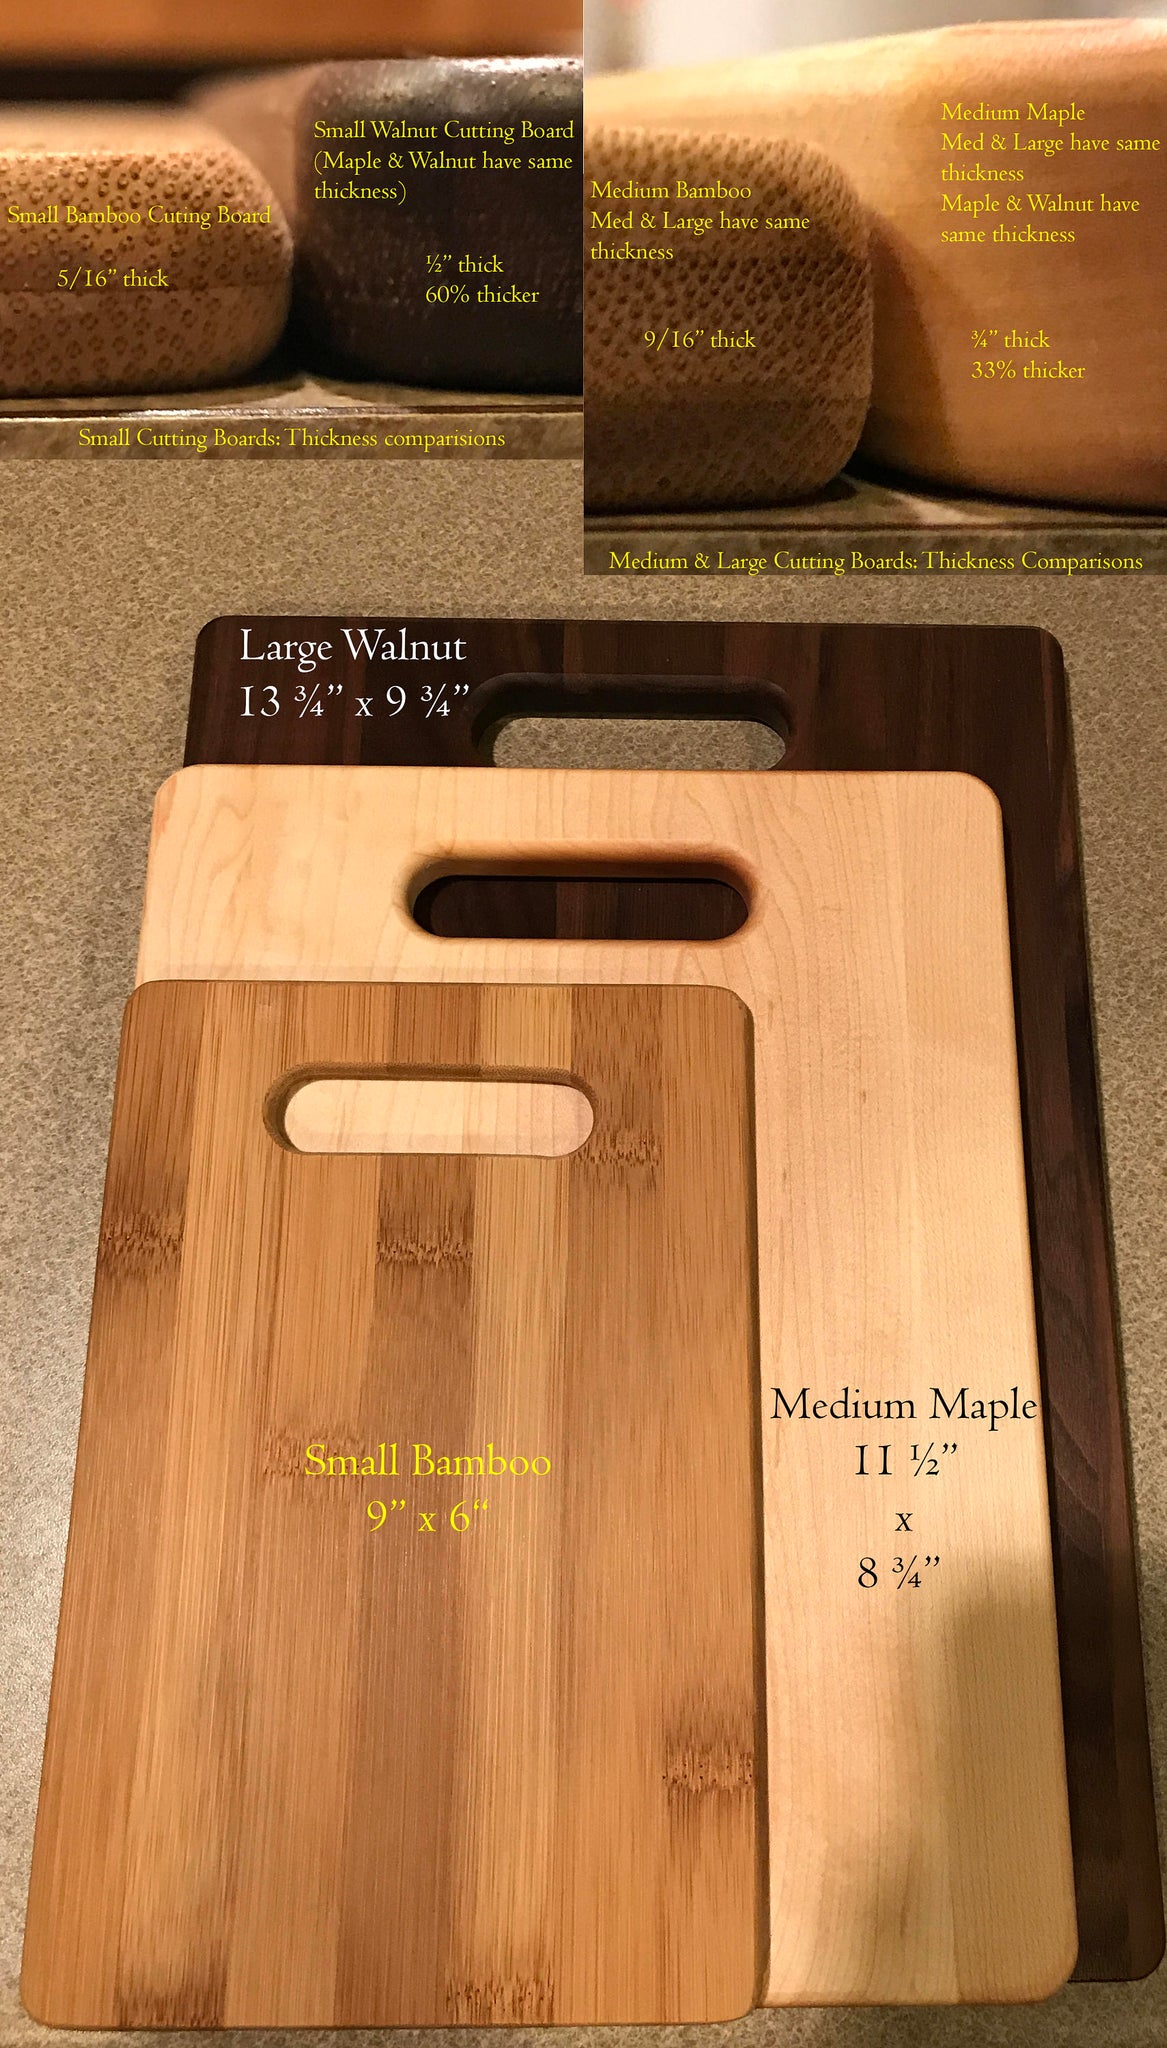 Small Walnut Cutting Board 9 X 13